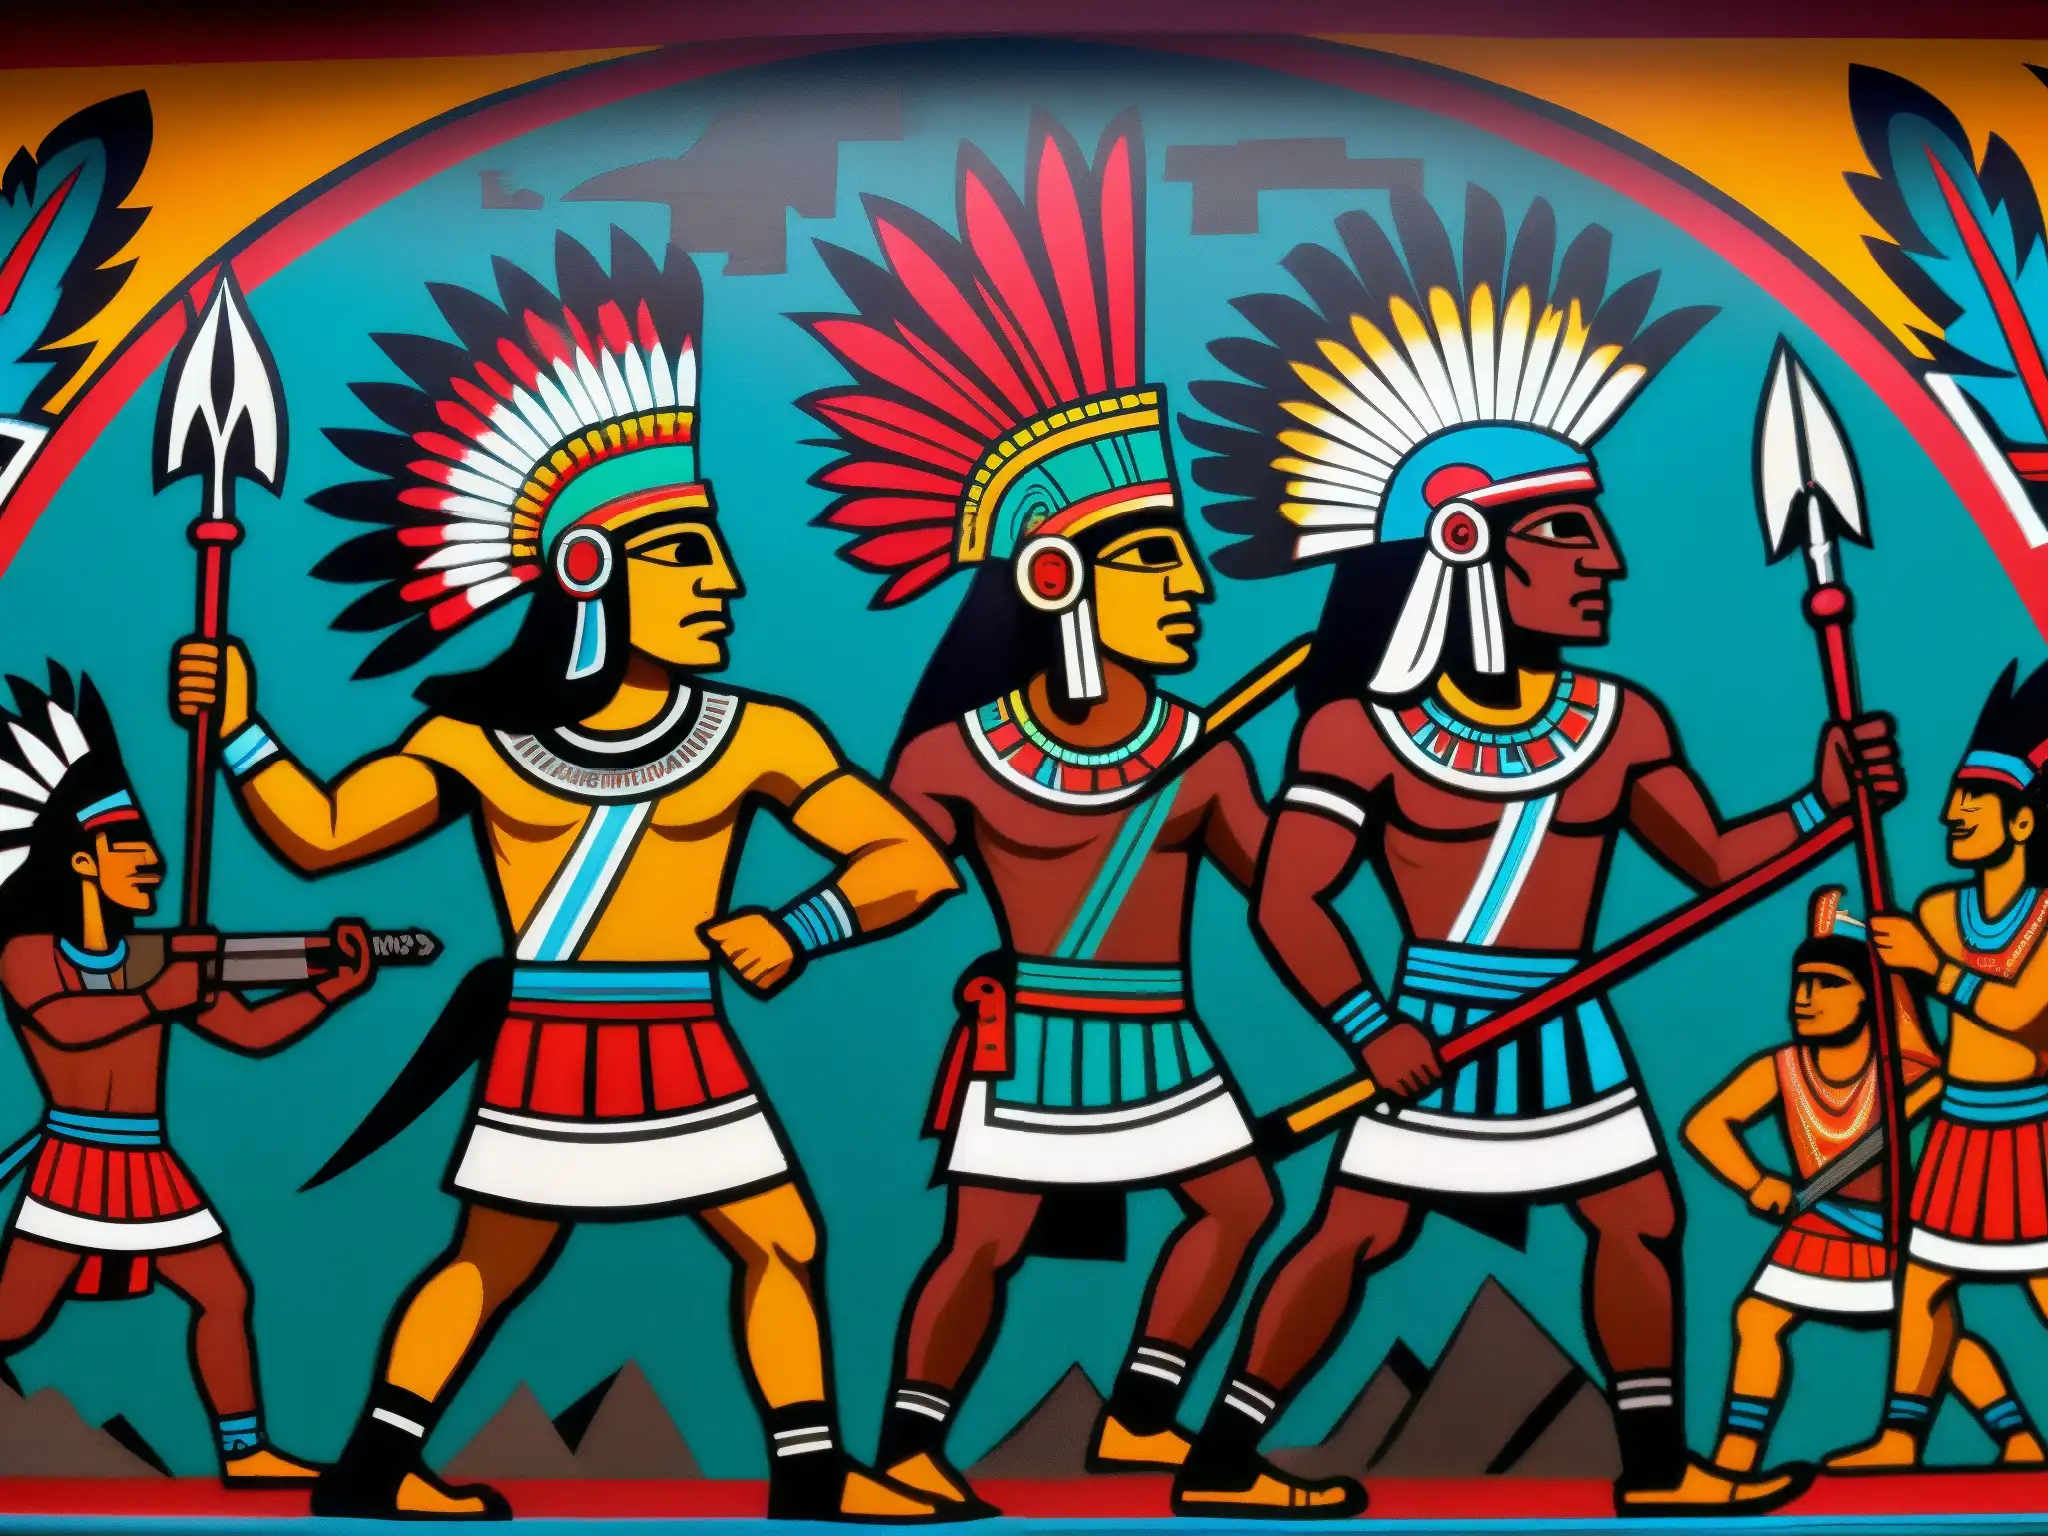 Vibrante mural muestra la lucha prehispánica del Tzitzimitl contra la oscuridad en detallados colores y símbolos cósmicos